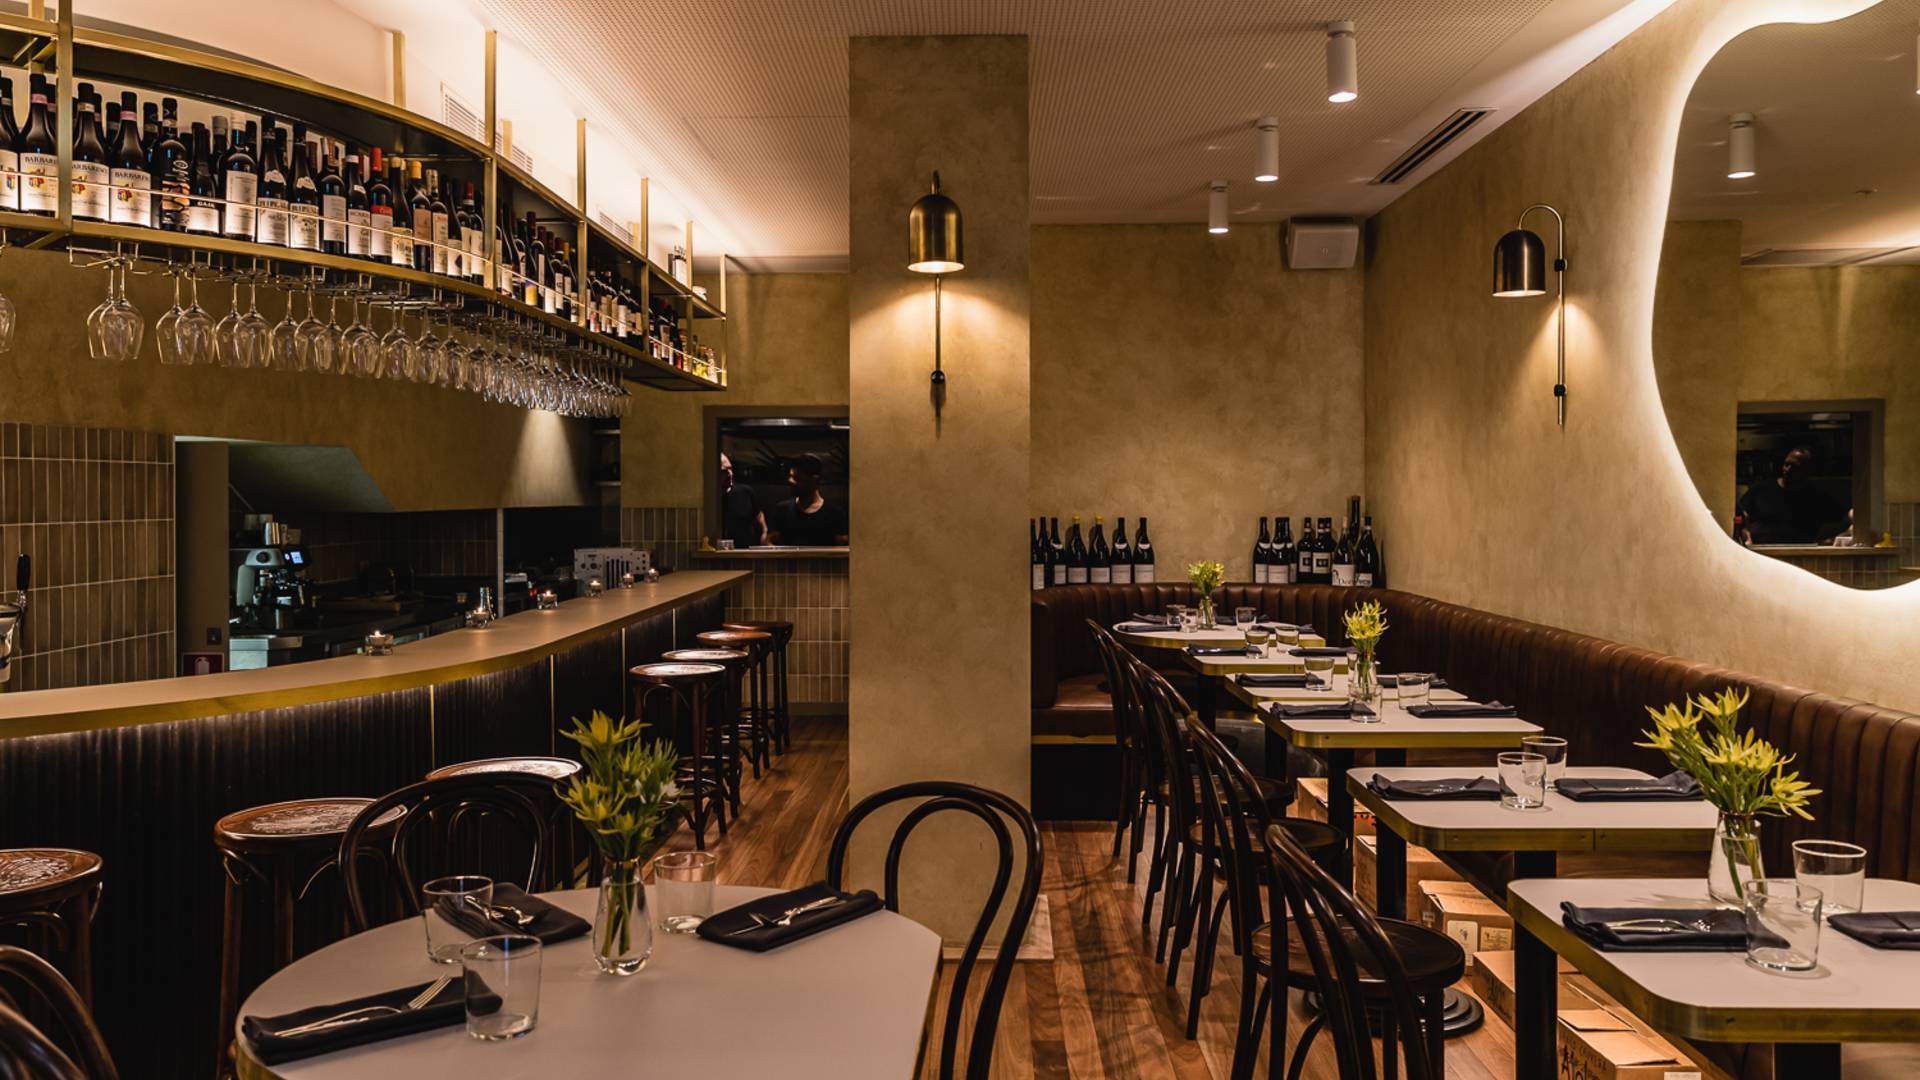 Ragazzi - one of the best Sydney CBD restaurants